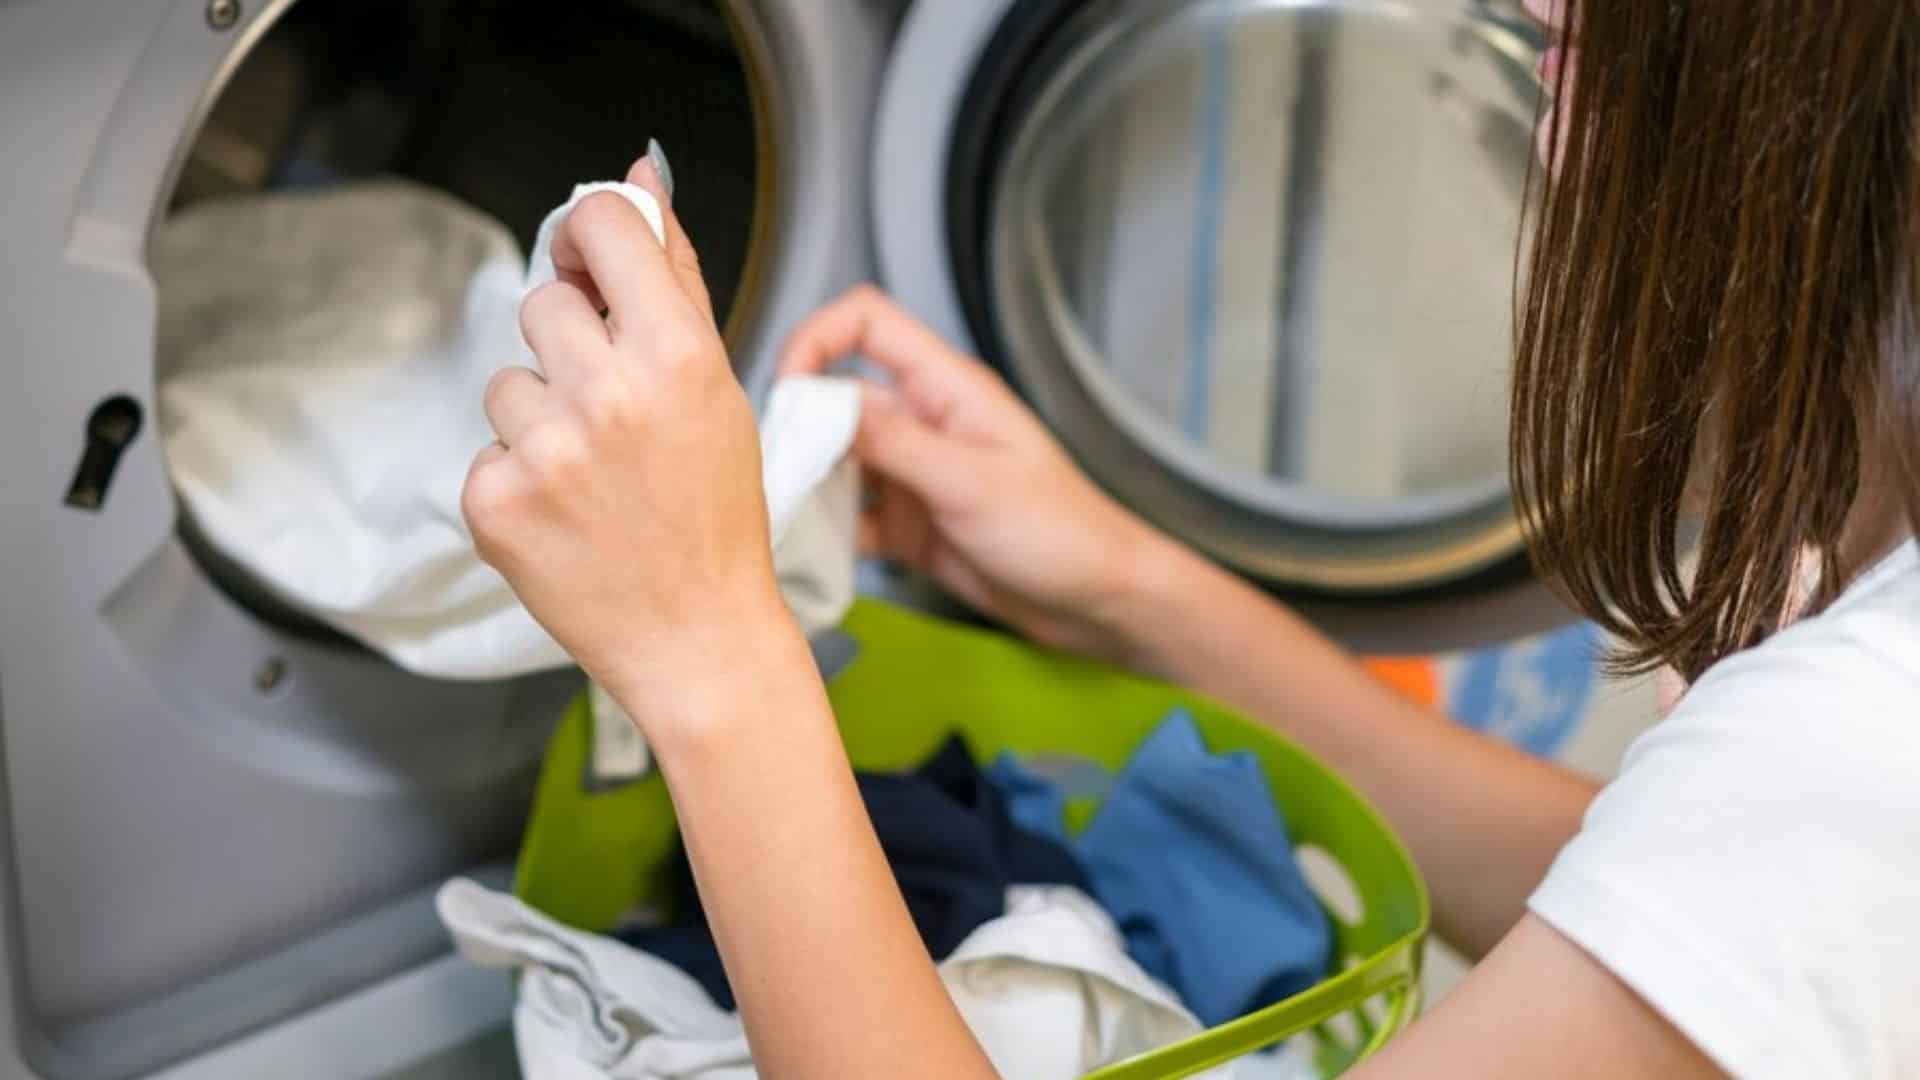 Laundry in Dubai